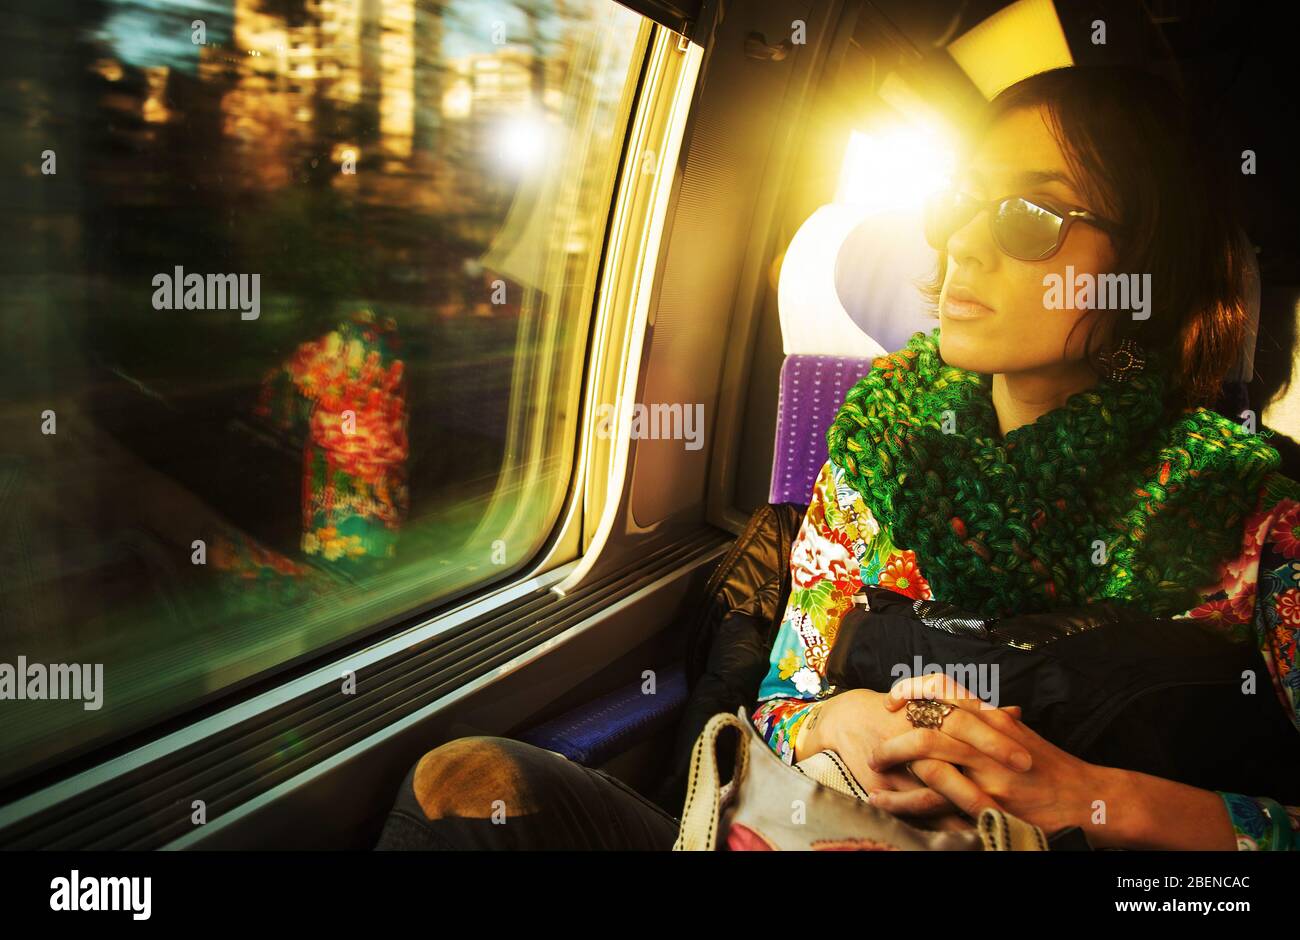 Photo candiée d'une jeune femme parisienne qui voyage en train, assise près de la fenêtre Banque D'Images